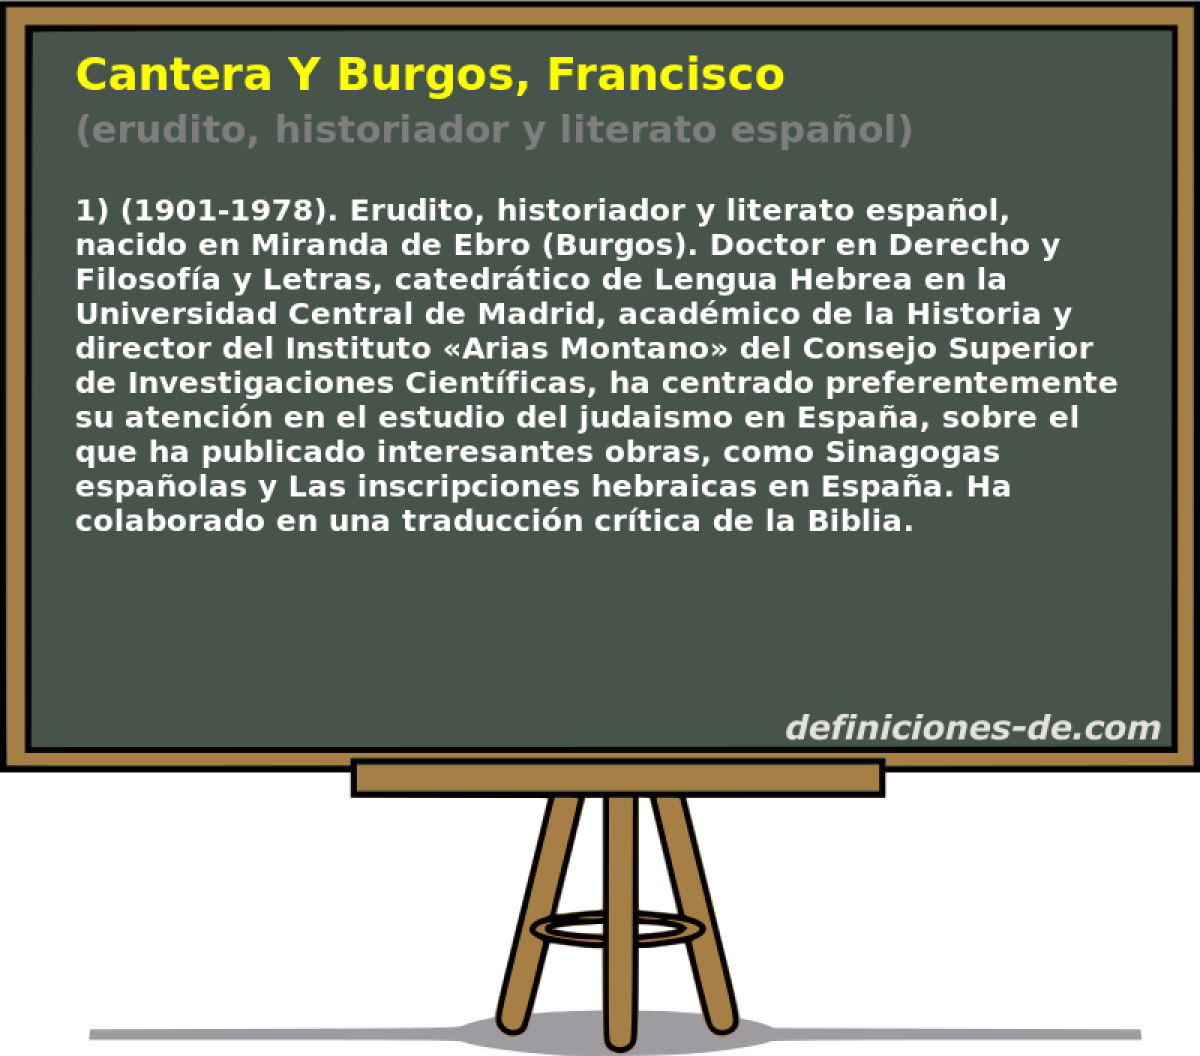 Cantera Y Burgos, Francisco (erudito, historiador y literato espaol)